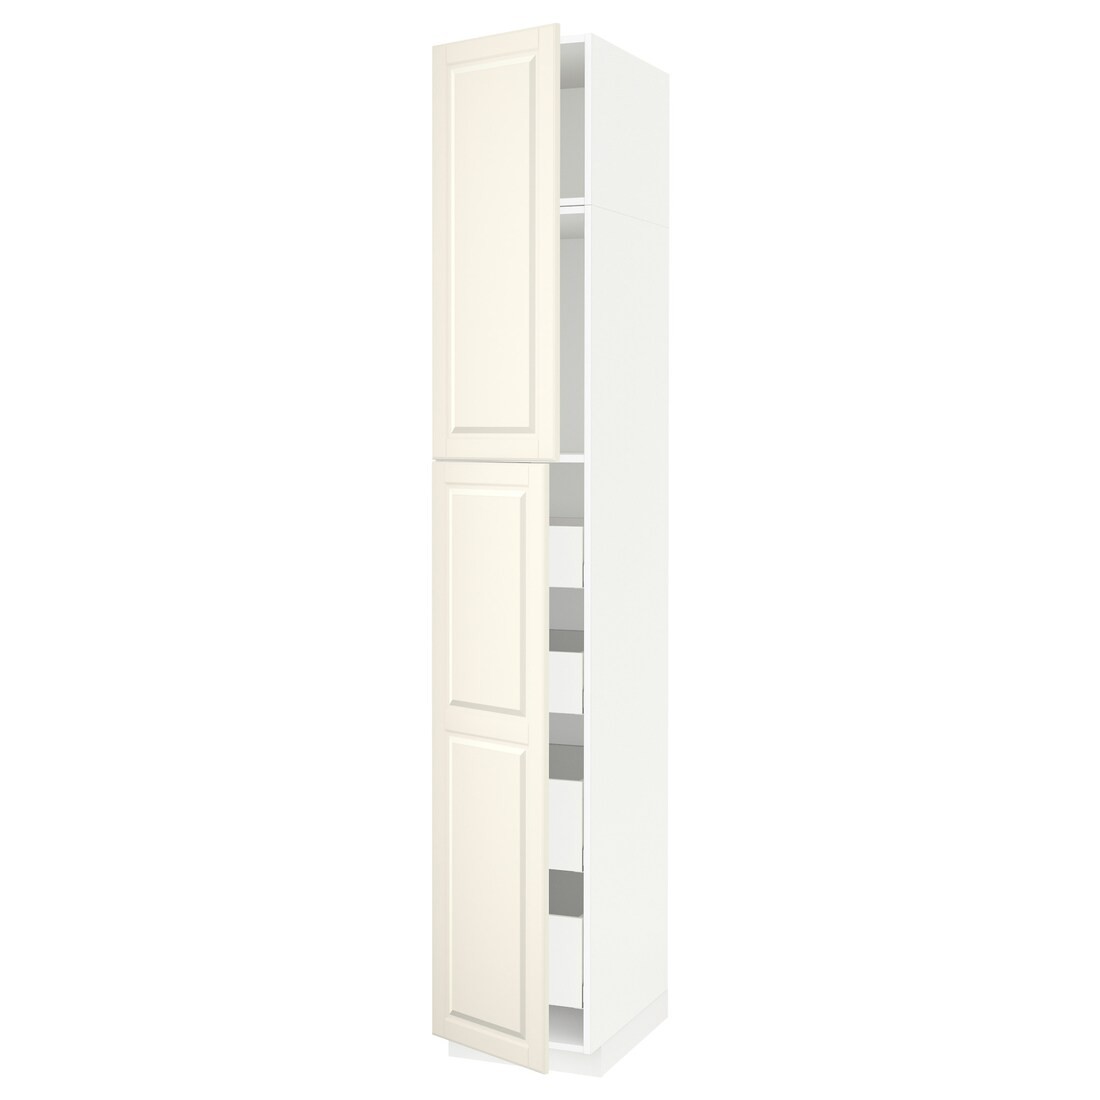 IKEA METOD МЕТОД / MAXIMERA МАКСИМЕРА Шкаф высокий 2 двери / 4 ящика, белый / Bodbyn кремовый, 40x60x240 см 09458216 094.582.16